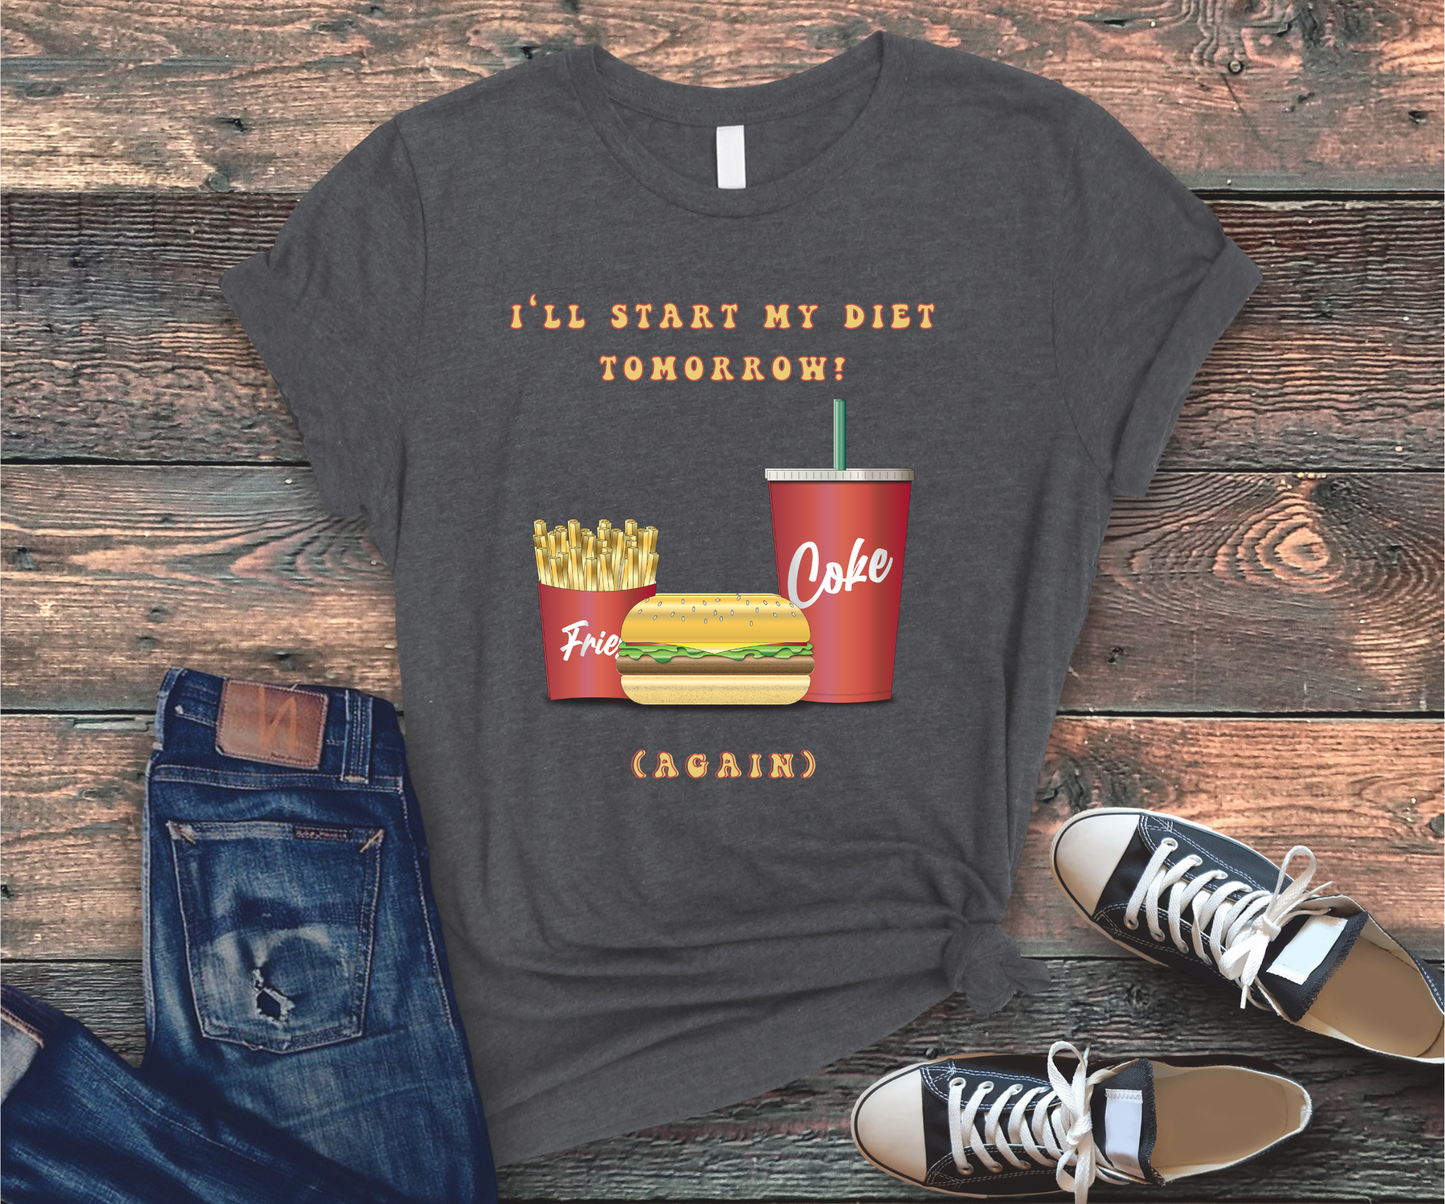 I'LL START MY DIET TOMORROW T-shirt